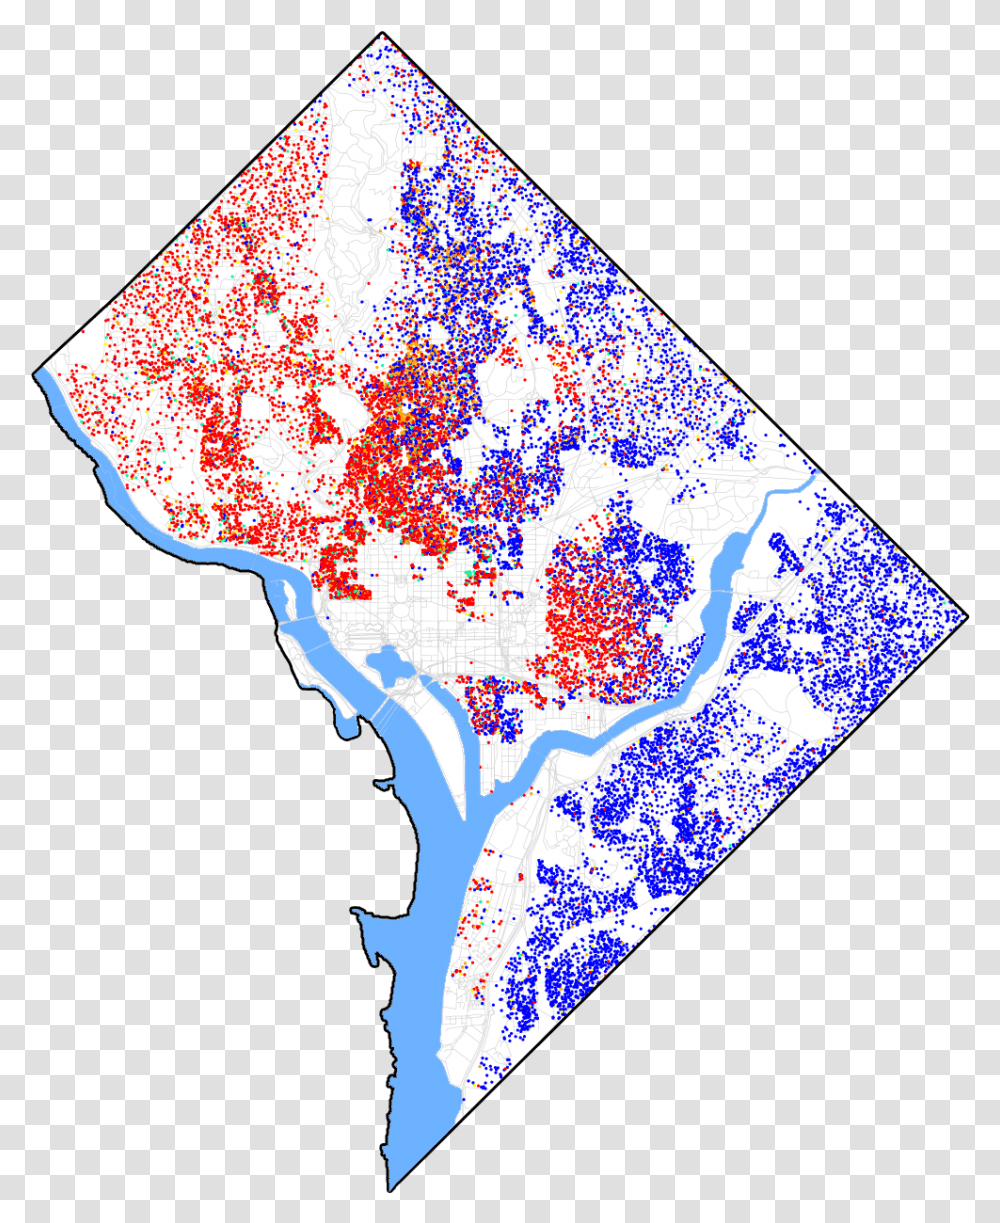 Race And Ethnicity In Washington D Dc Race Map, Diagram, Plot, Atlas Transparent Png